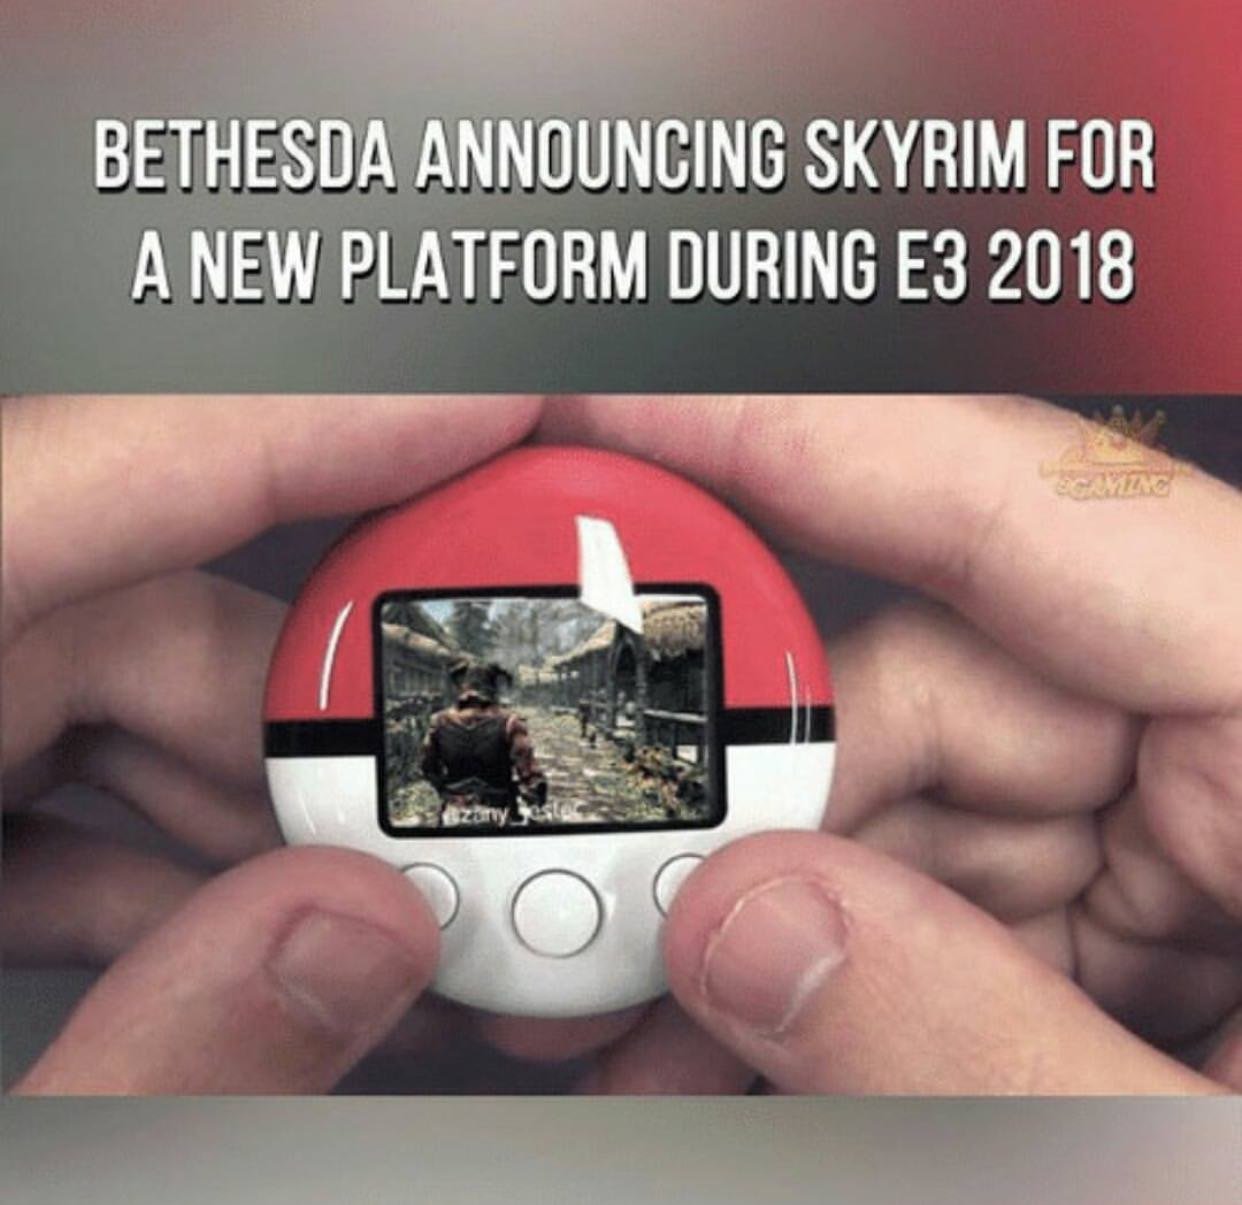 skyrim pokewalker - Bethesda Announcing Skyrim For A New Platform During E3 2018